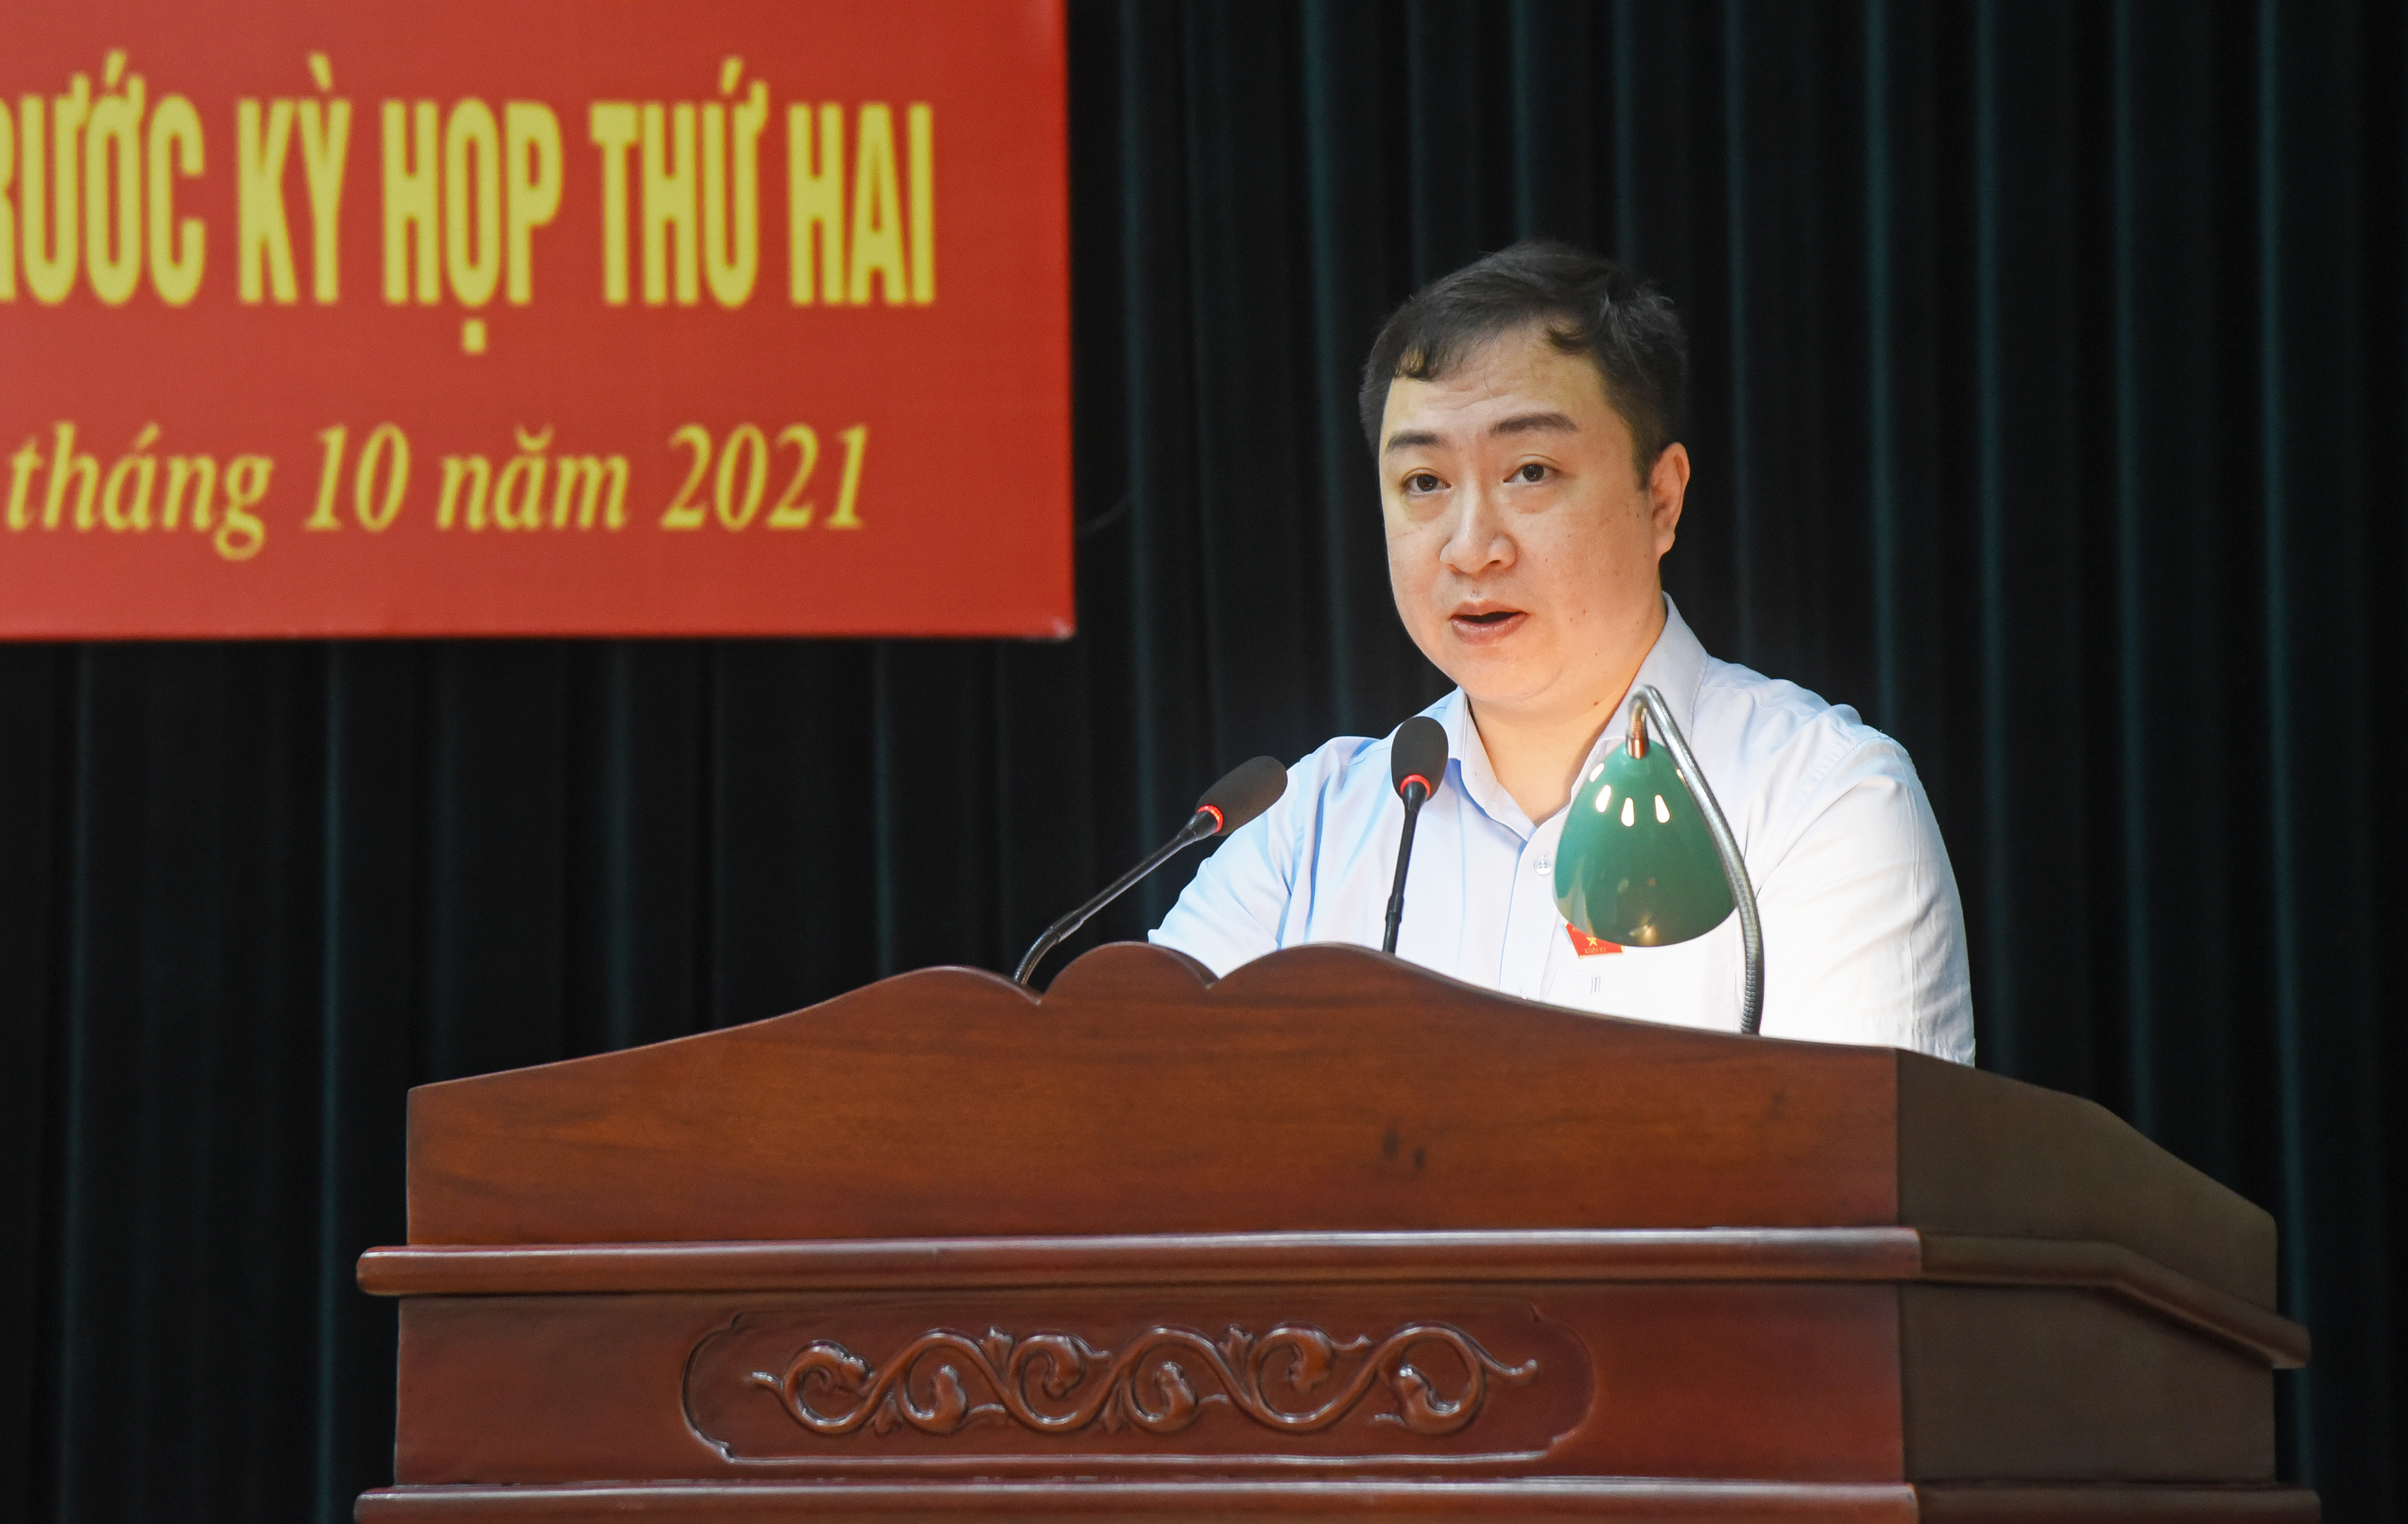 Đại biểu Đặng Xuân Phương - Phó Chủ nhiệm Ủy ban Văn hóa, Giáo dục của Quốc hội tiếp thu các ý kiến cử tri. Ảnh: TG